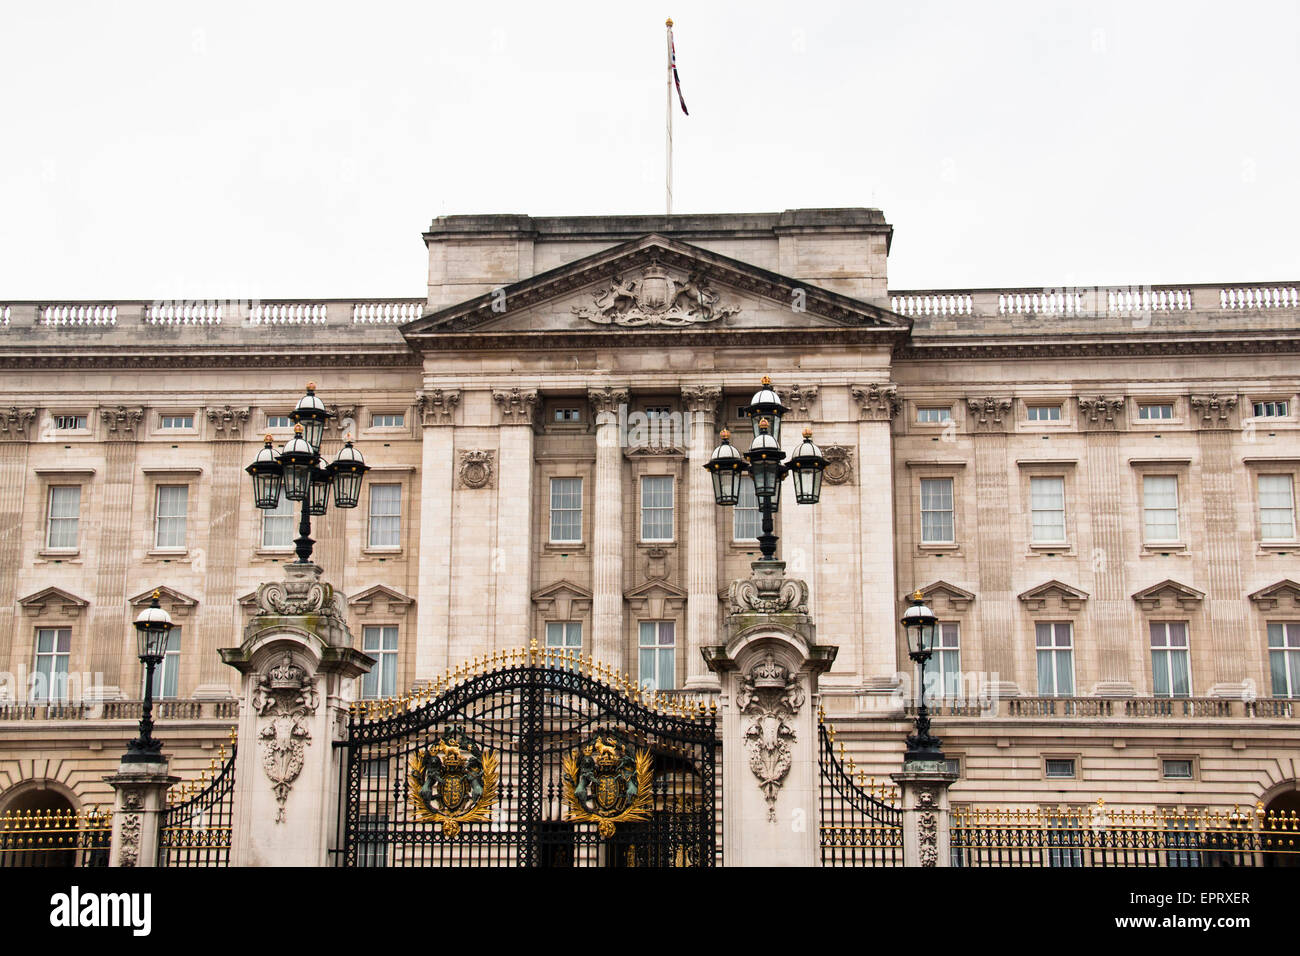 Buckingham Palace in London, UK Stock Photo